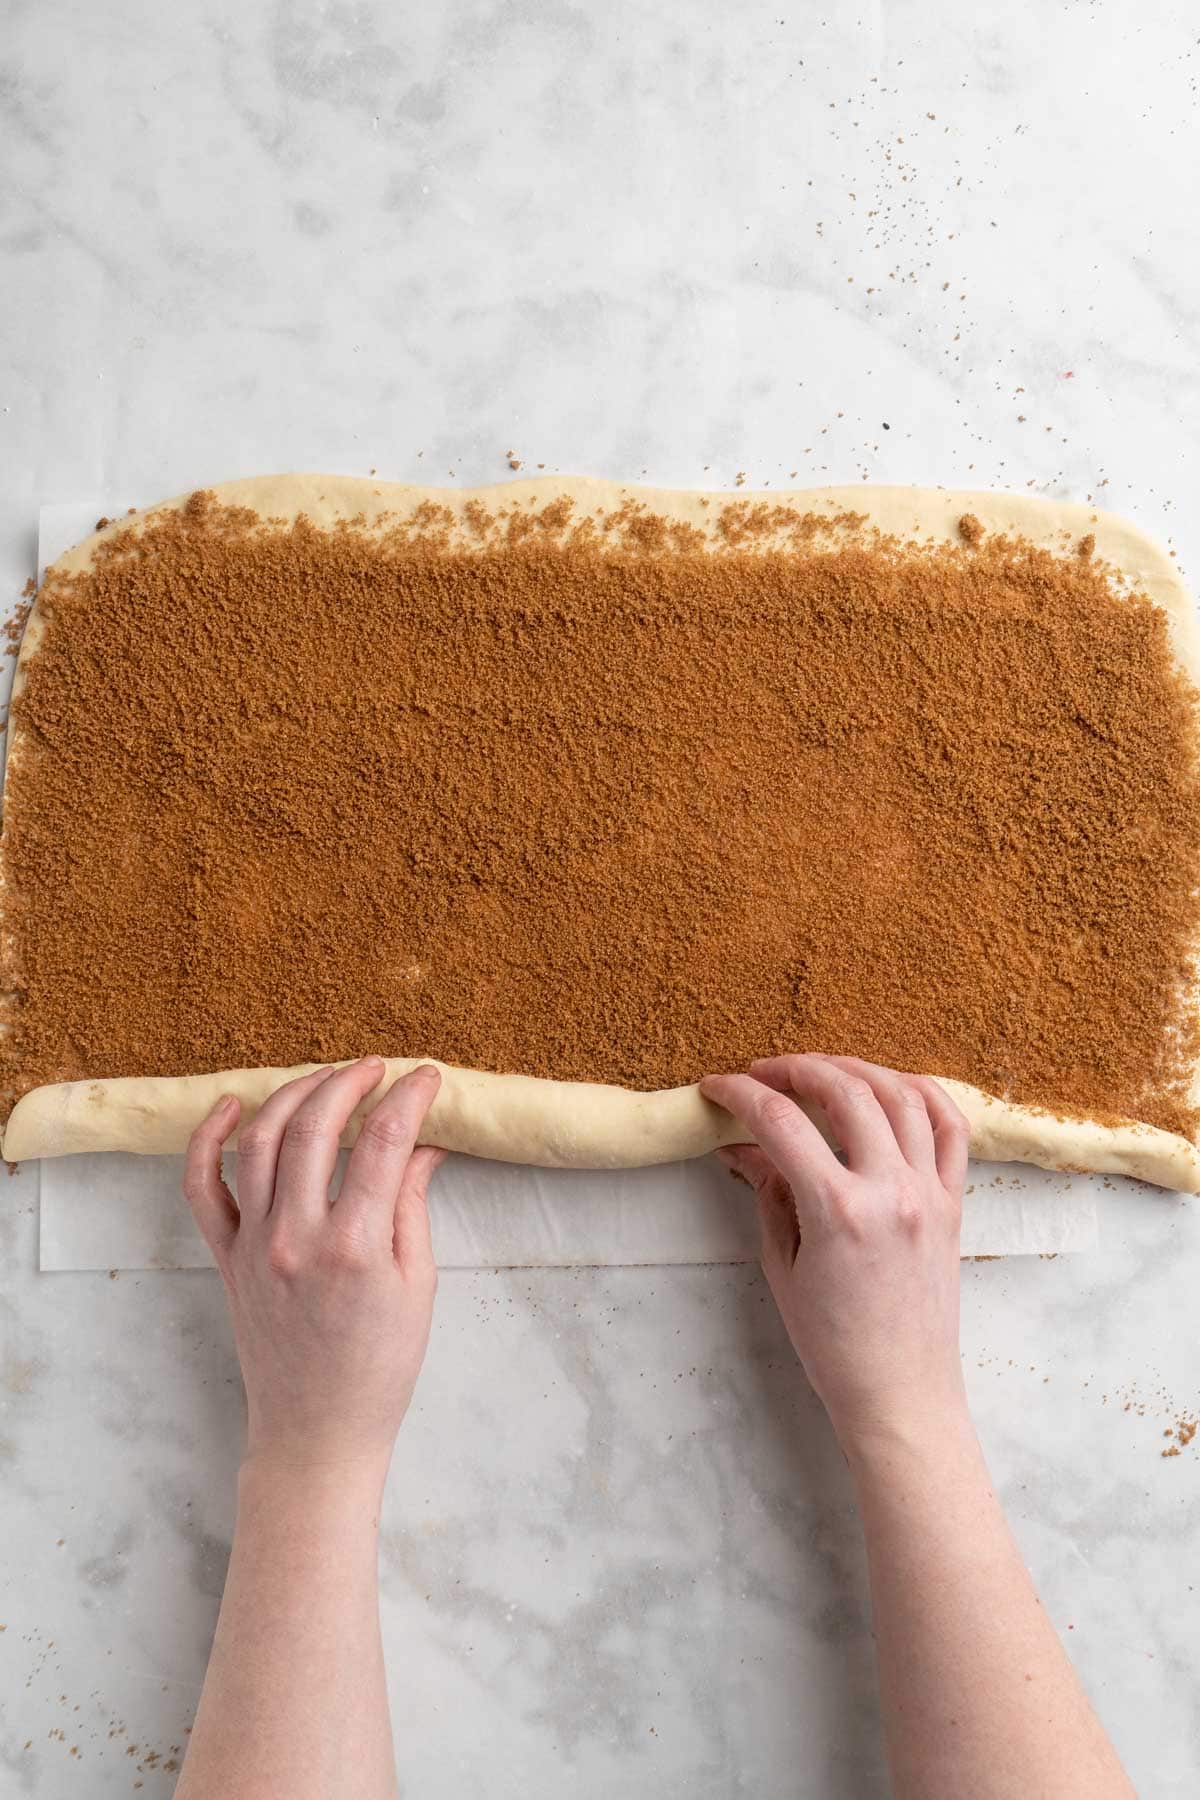 Rolling dough into a long log shape.